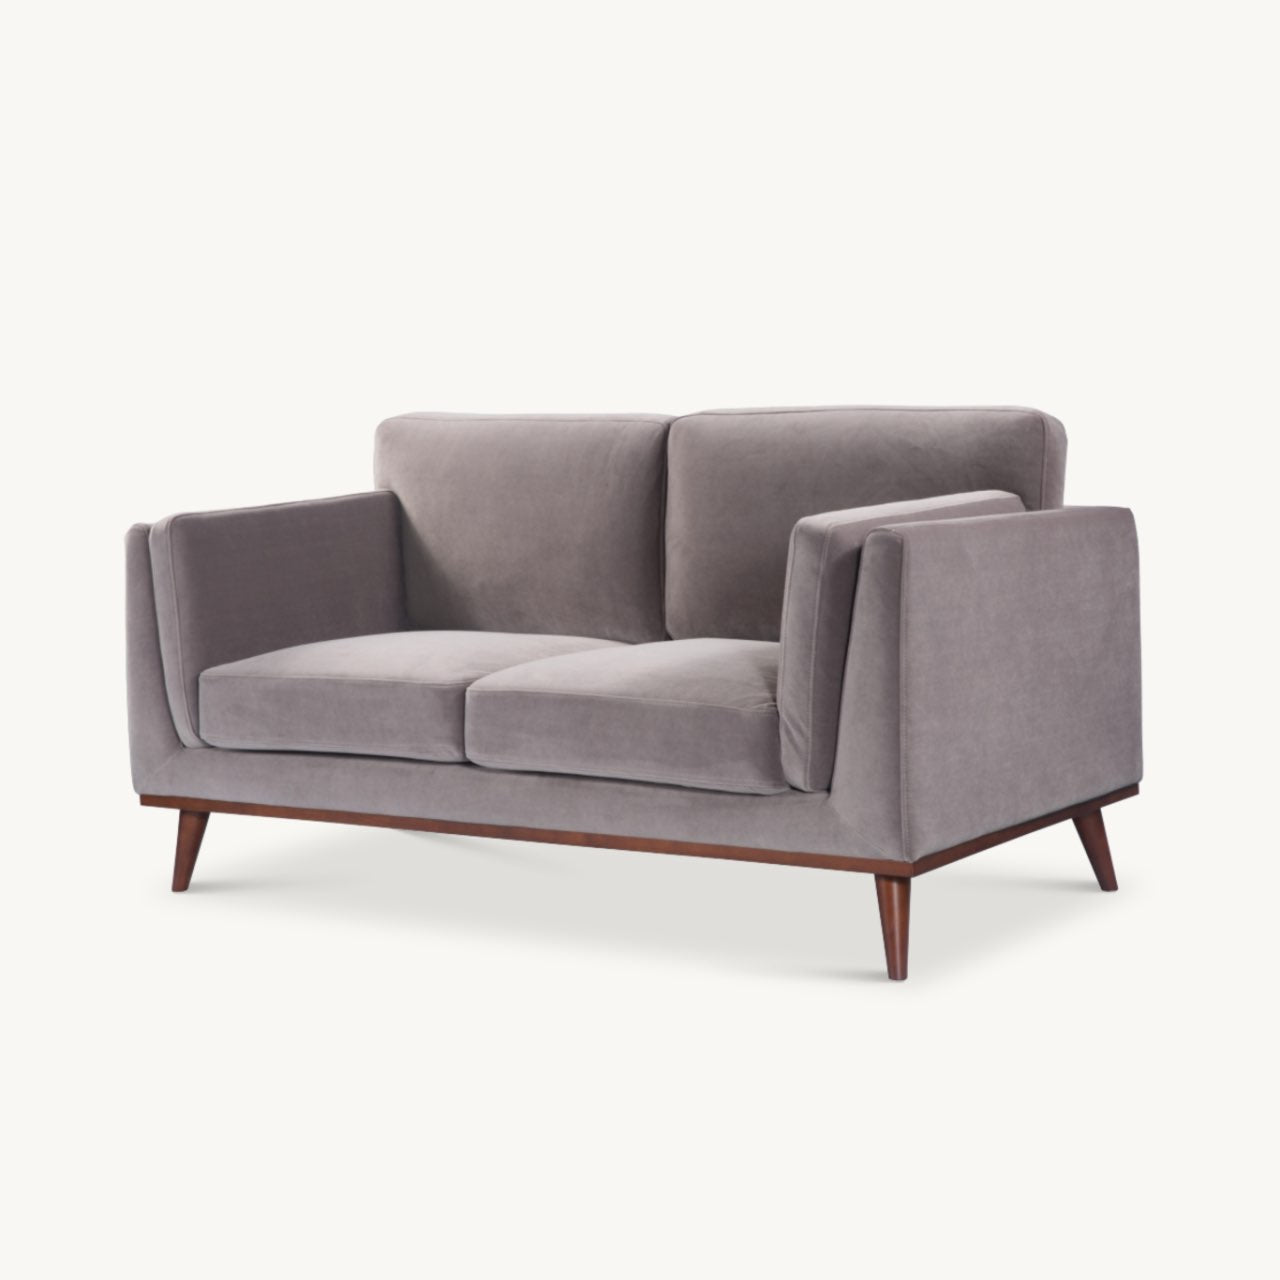 Simple, modern shaped 2 seater sofa in stone grey velvet upholstery